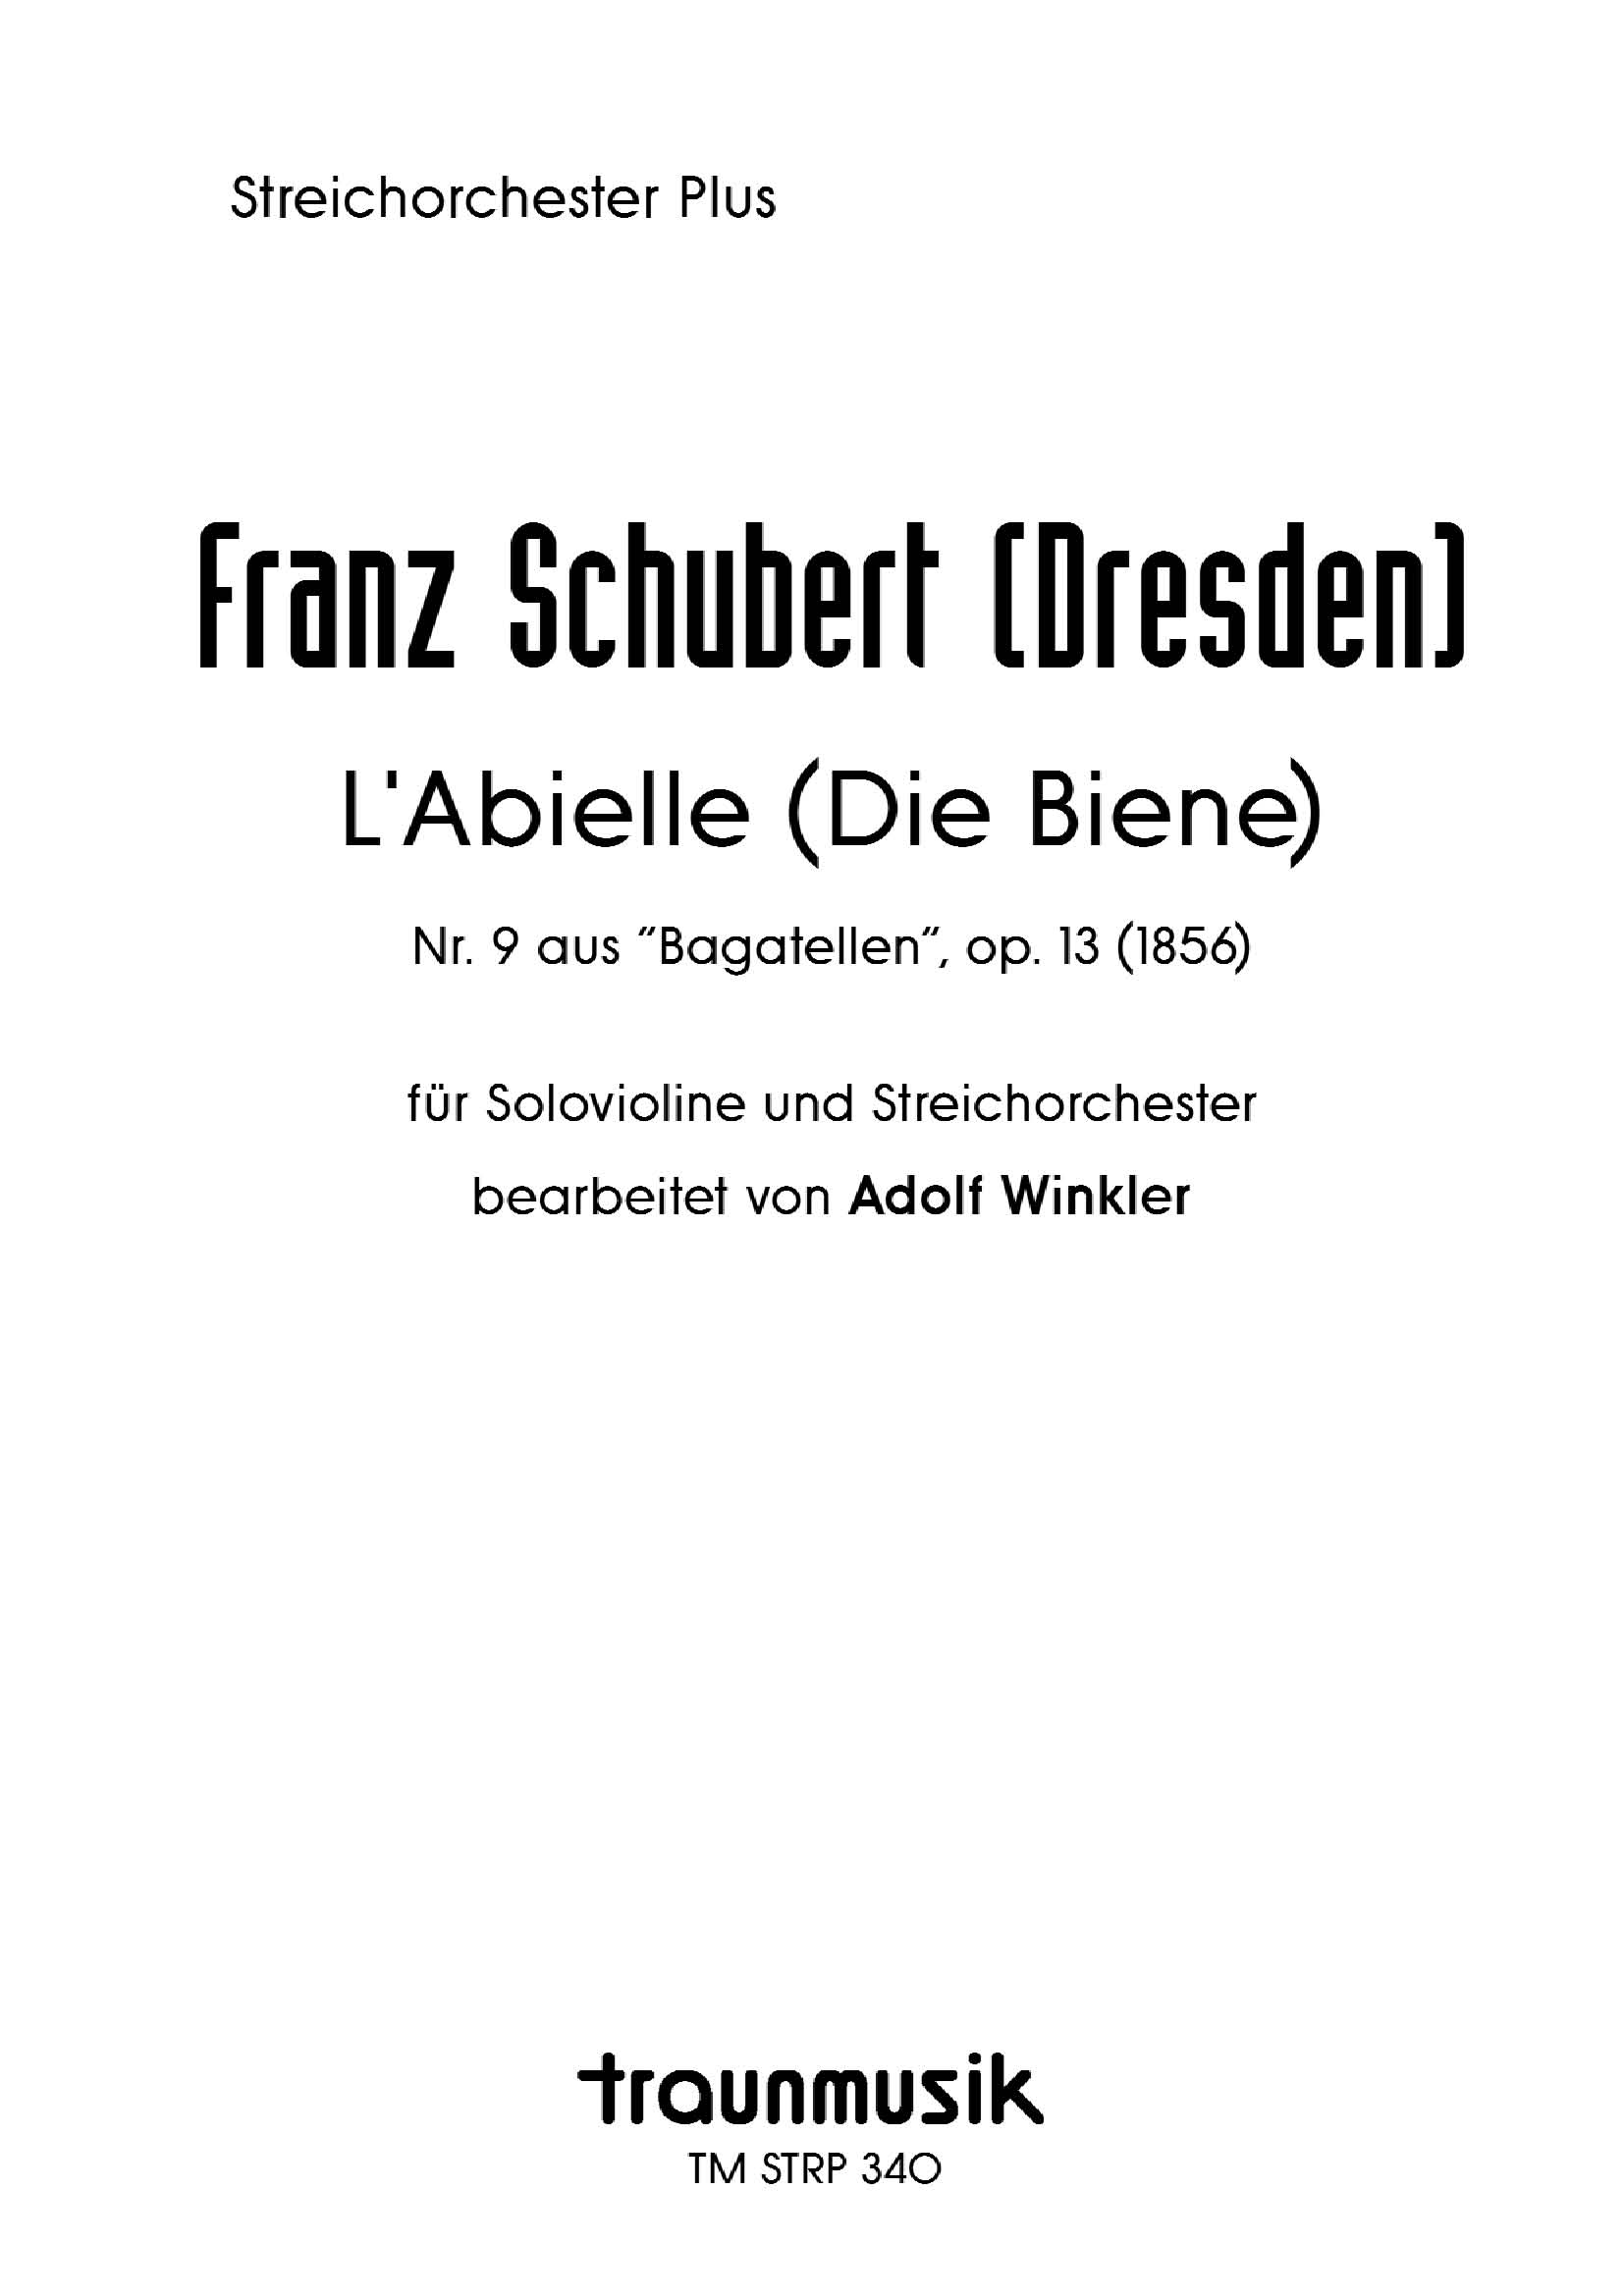 L'Abielle (Die Biene) / F. Schubert (Dresden)